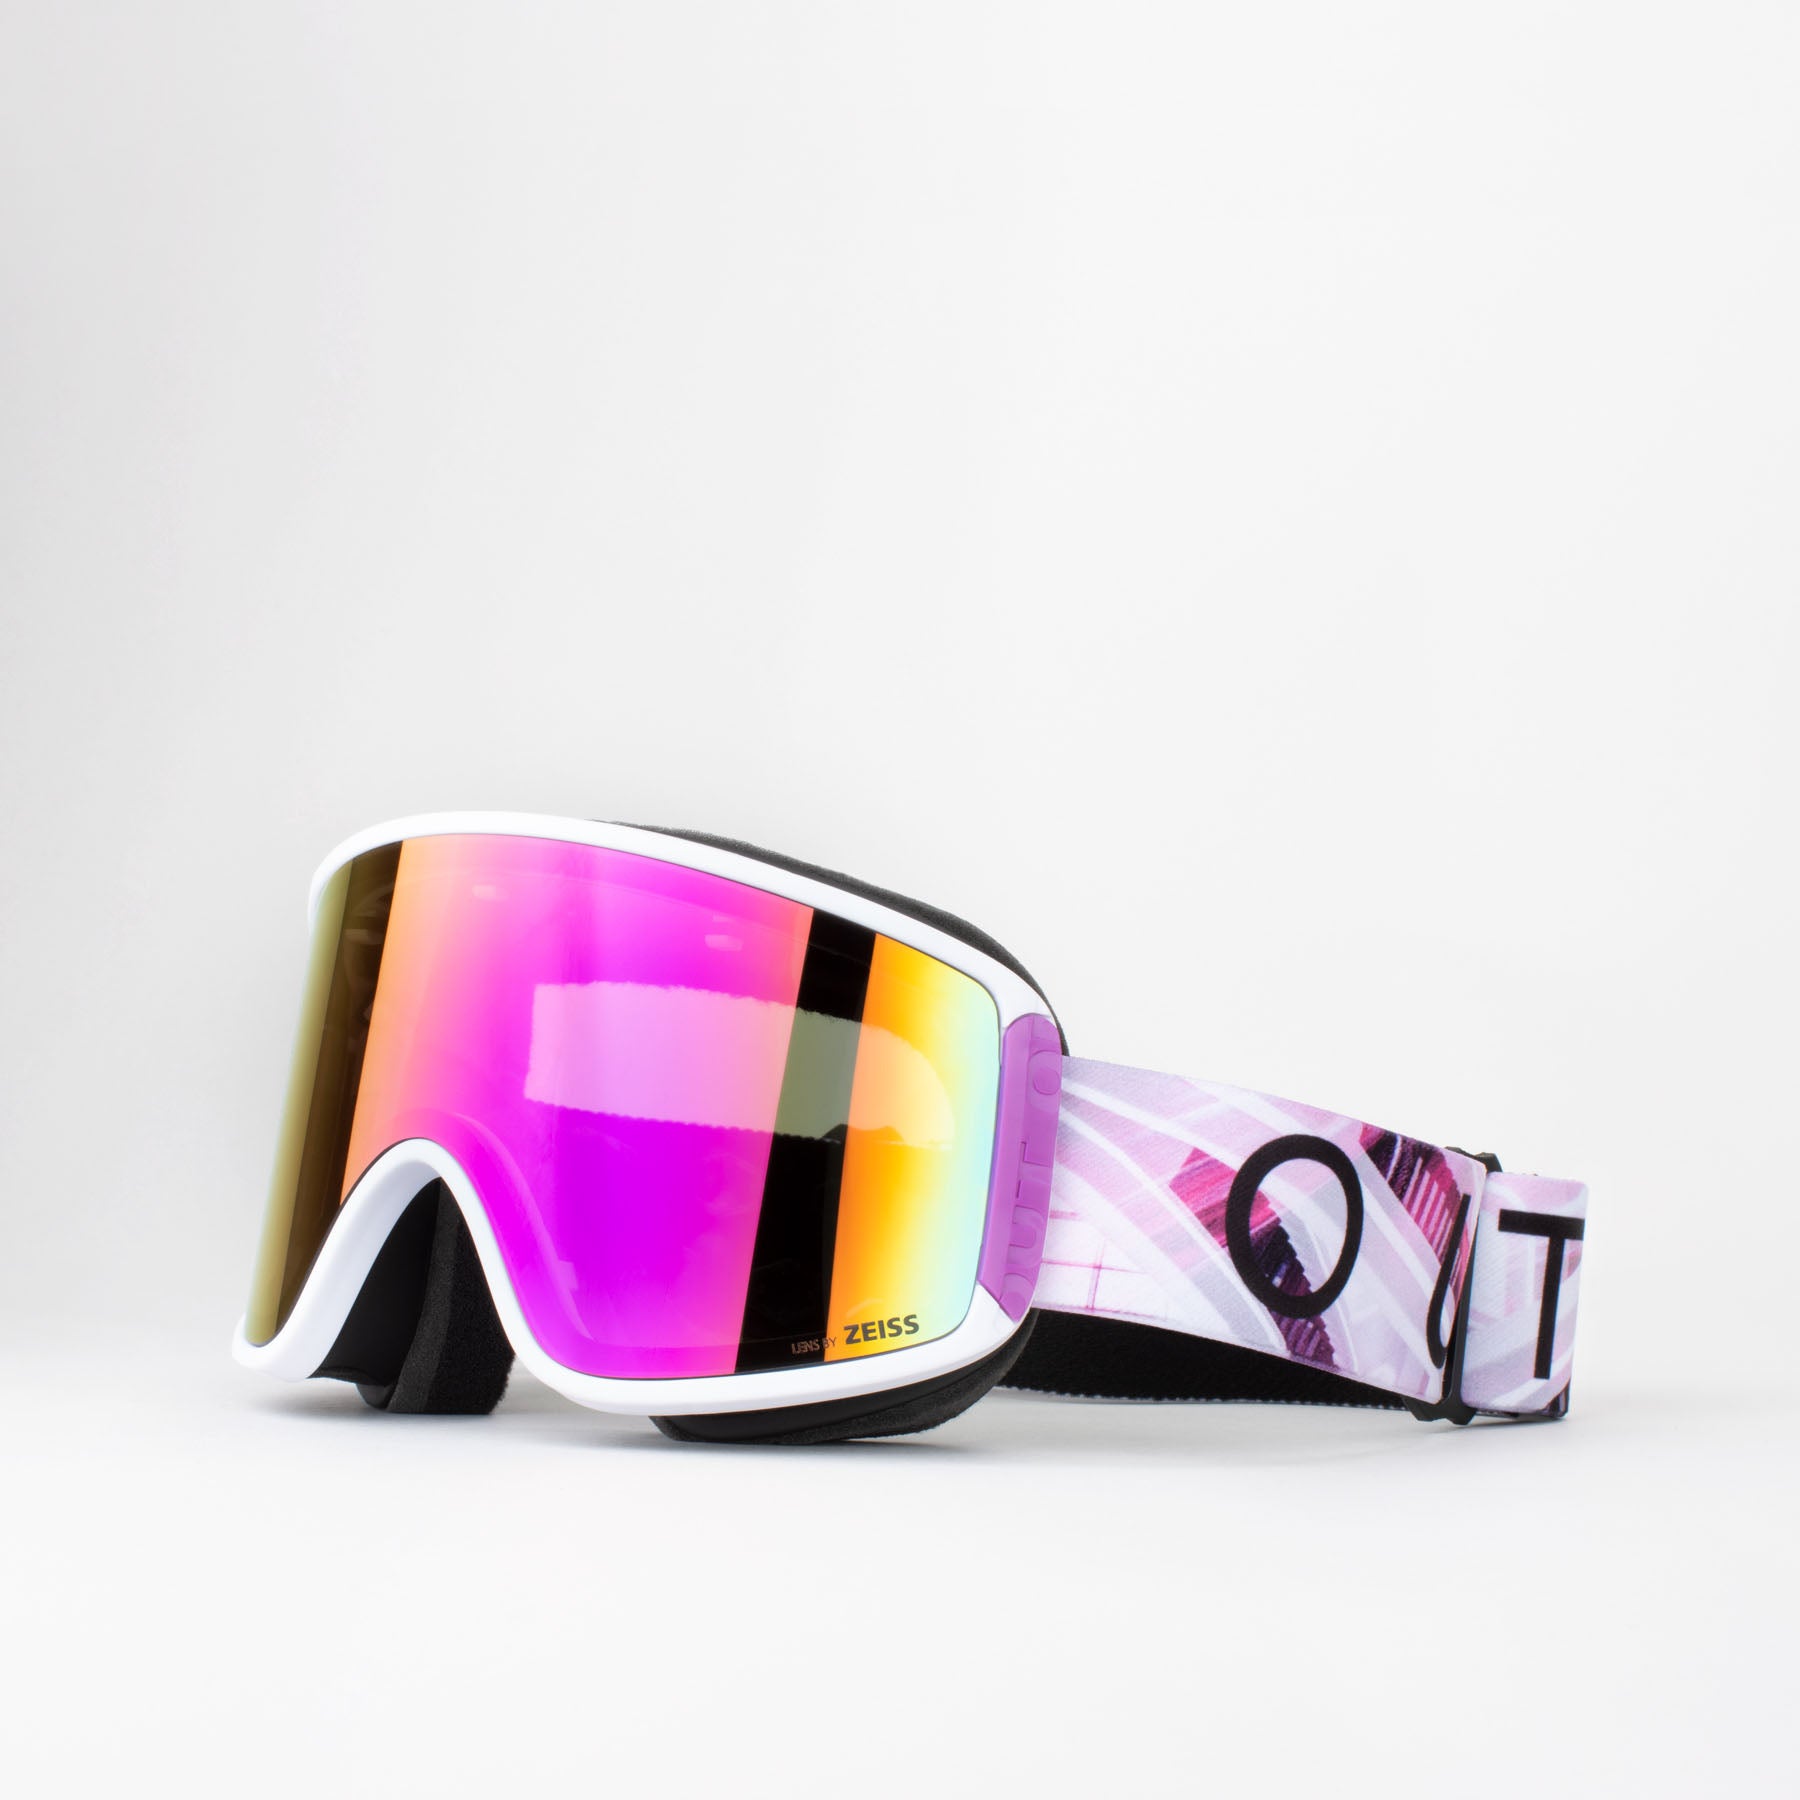 Occhiali sci e snowboard Mystic nero e giallo fluo - Ufo Plast